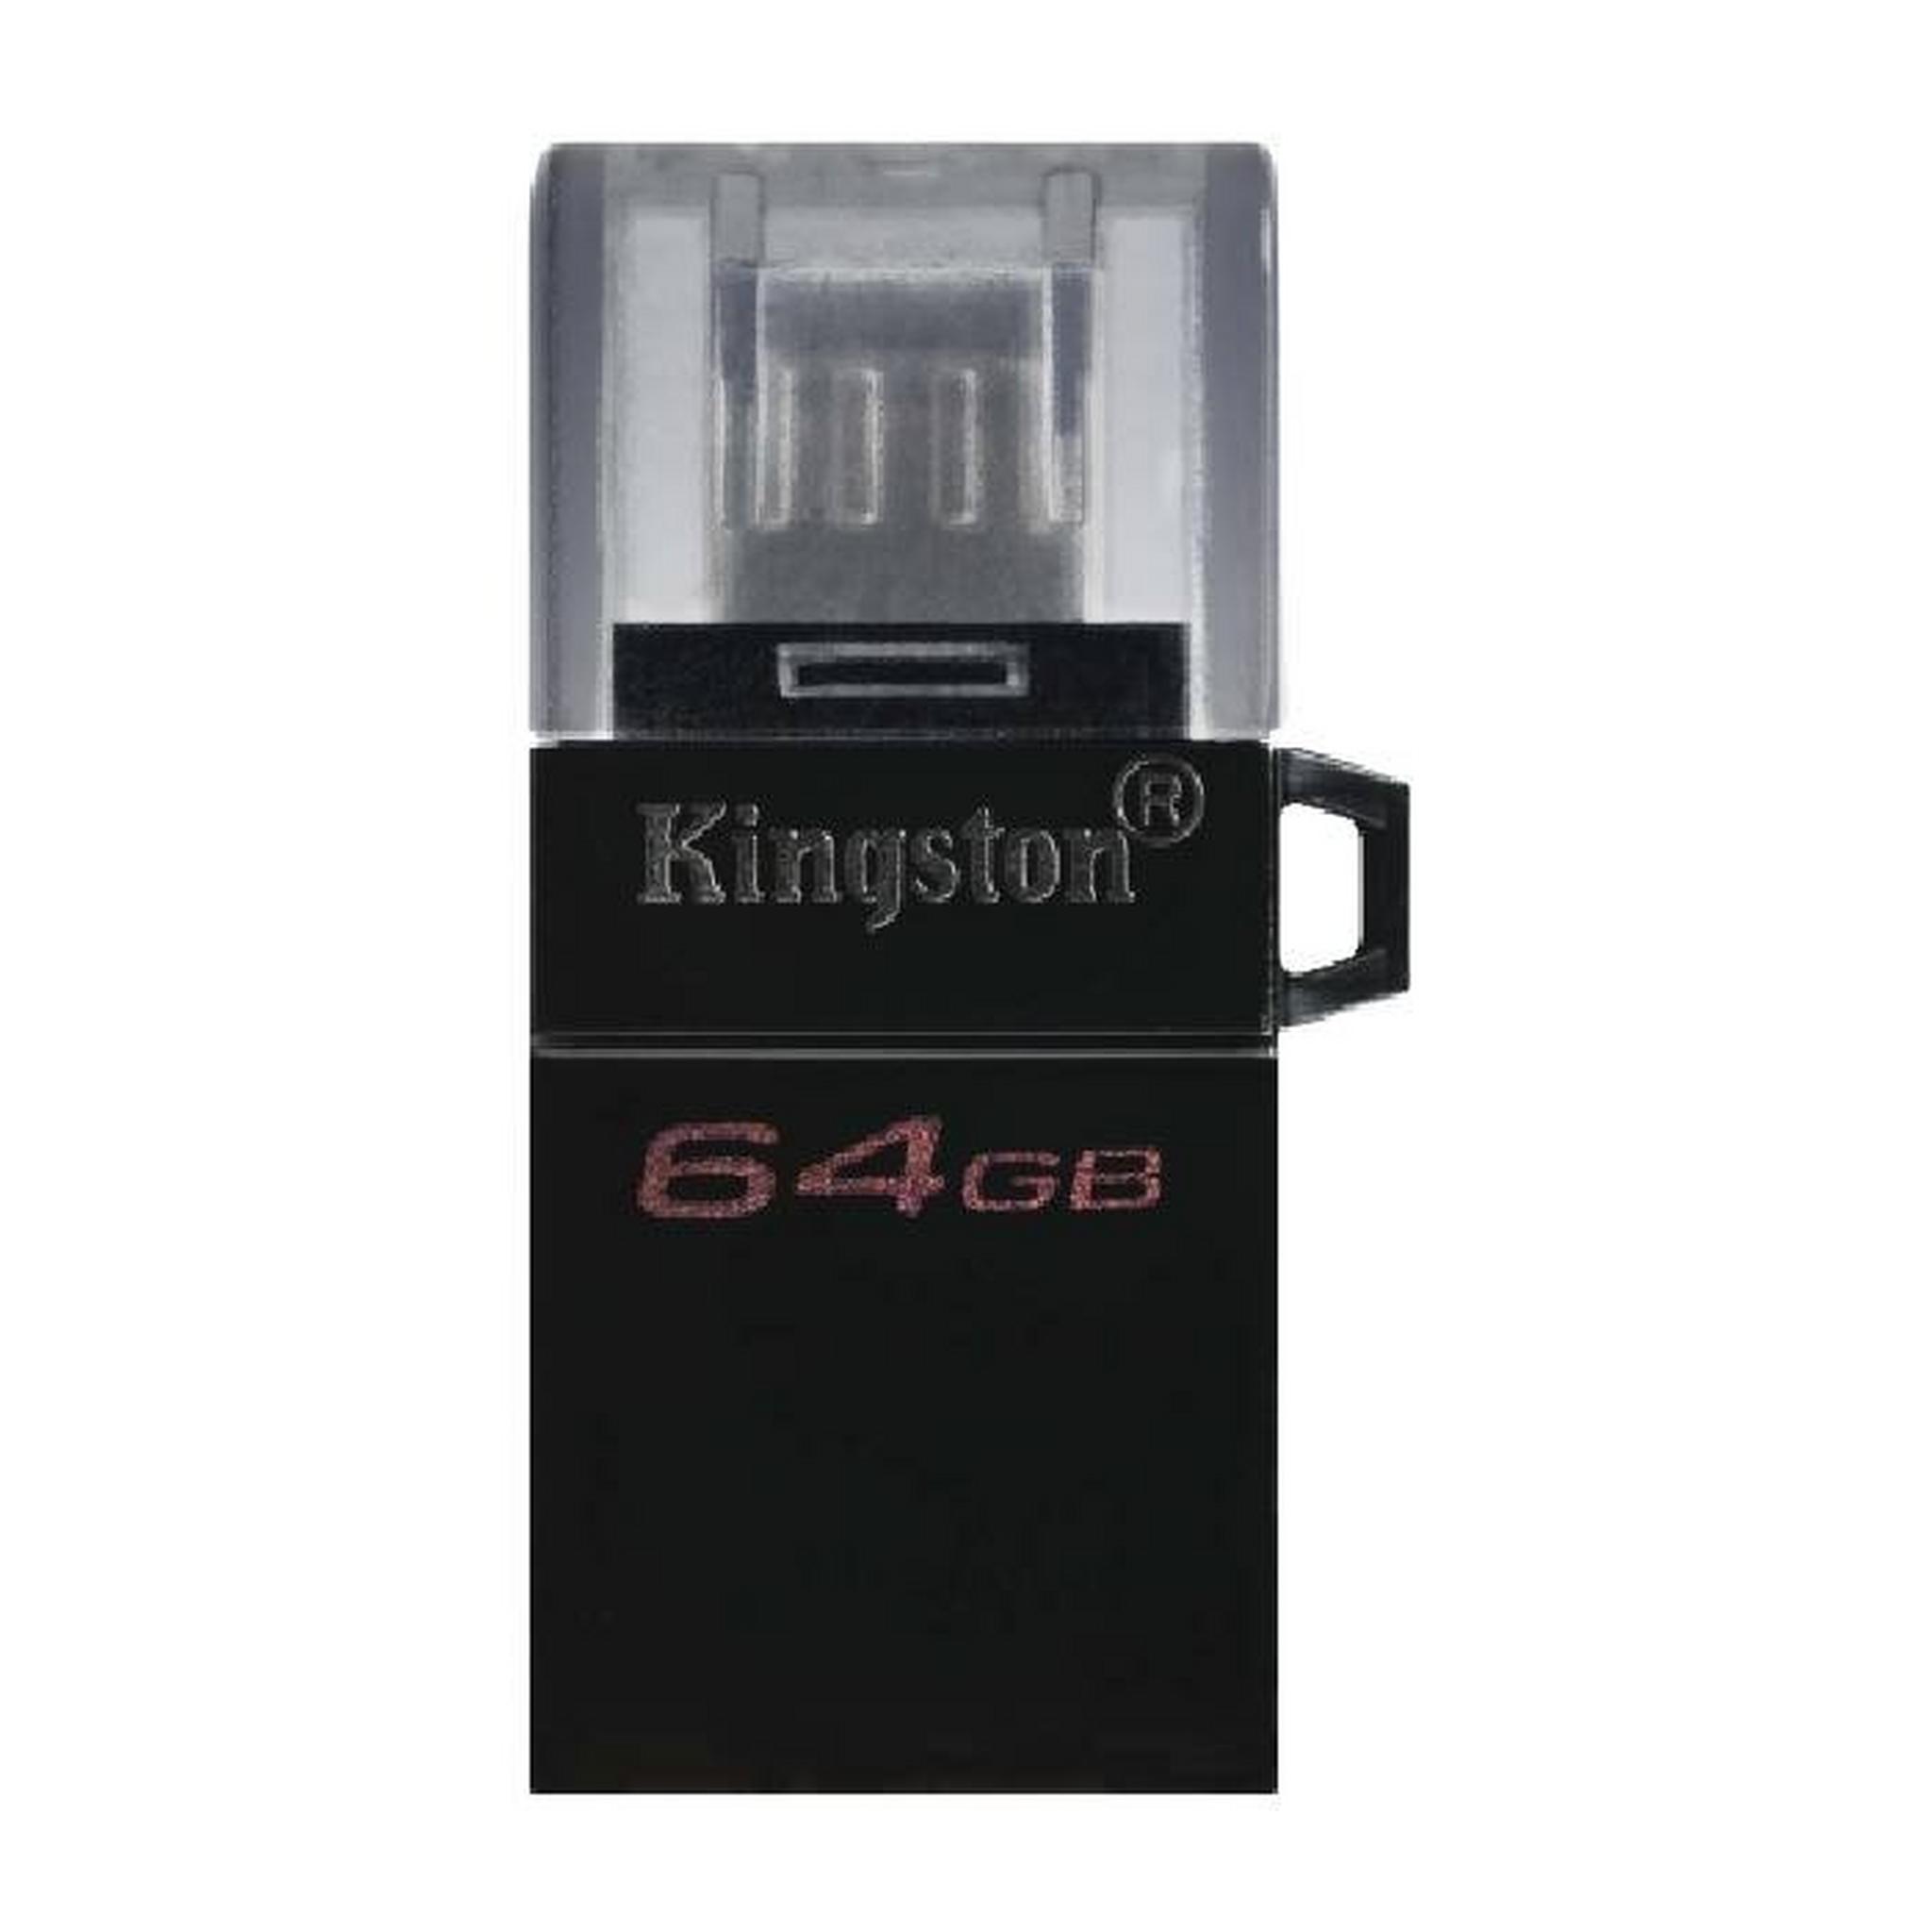 Kingston Micro Duo 3.0 Gen 2 64GB + Micro USB Flash Drive